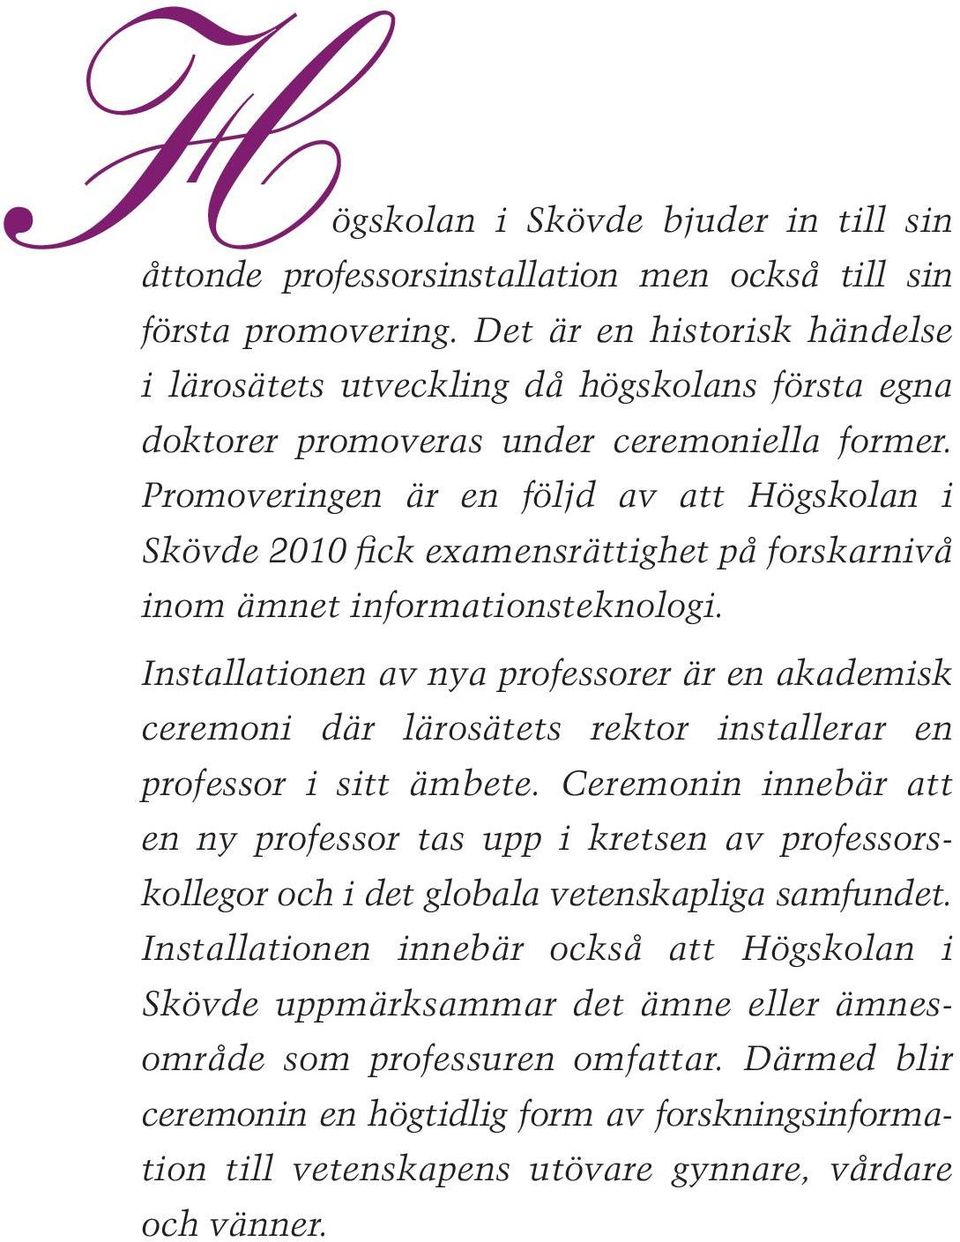 Promoveringen är en följd av att Högskolan i Skövde 2010 fick examensrättighet på forskarnivå inom ämnet informationsteknologi.